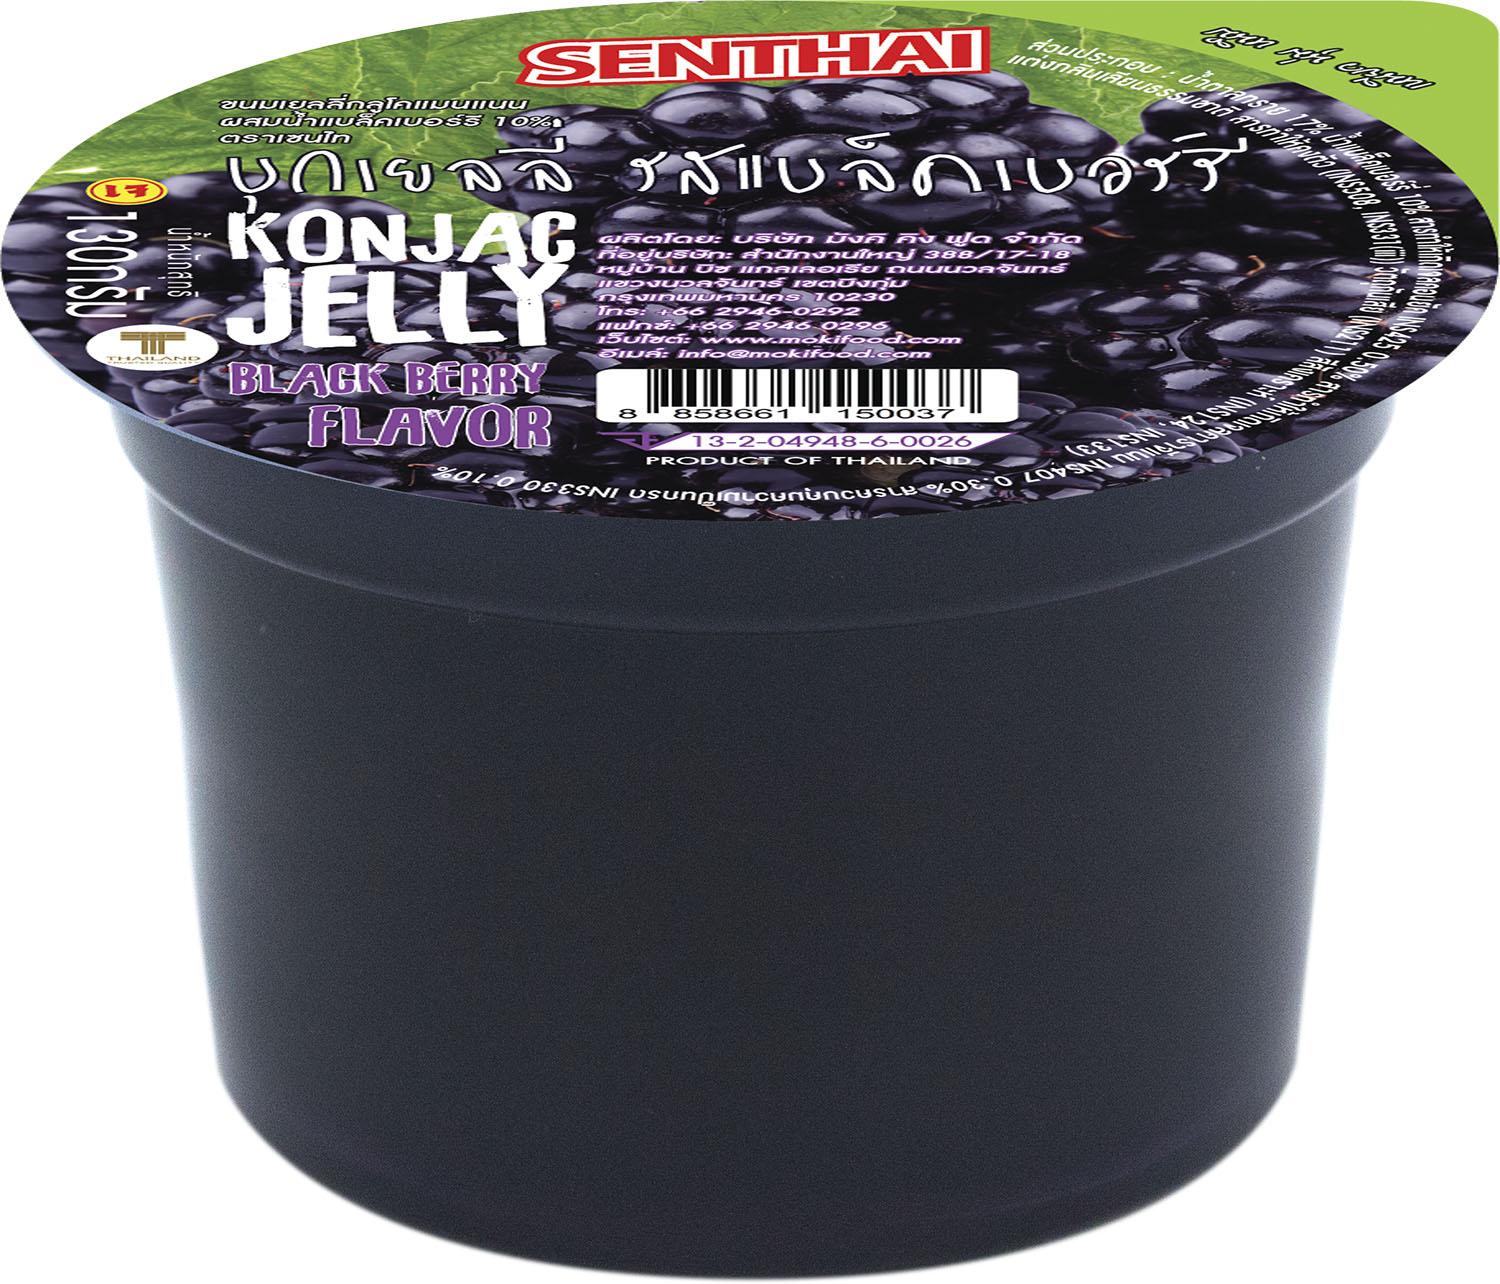 [พร้อมทาน] SENTHAI บุกเยลลี่รสแบล็คเบอร์รี่ ขนาด 130 กรัม X 6 Ready to eat  Konjac jelly black berry flavor